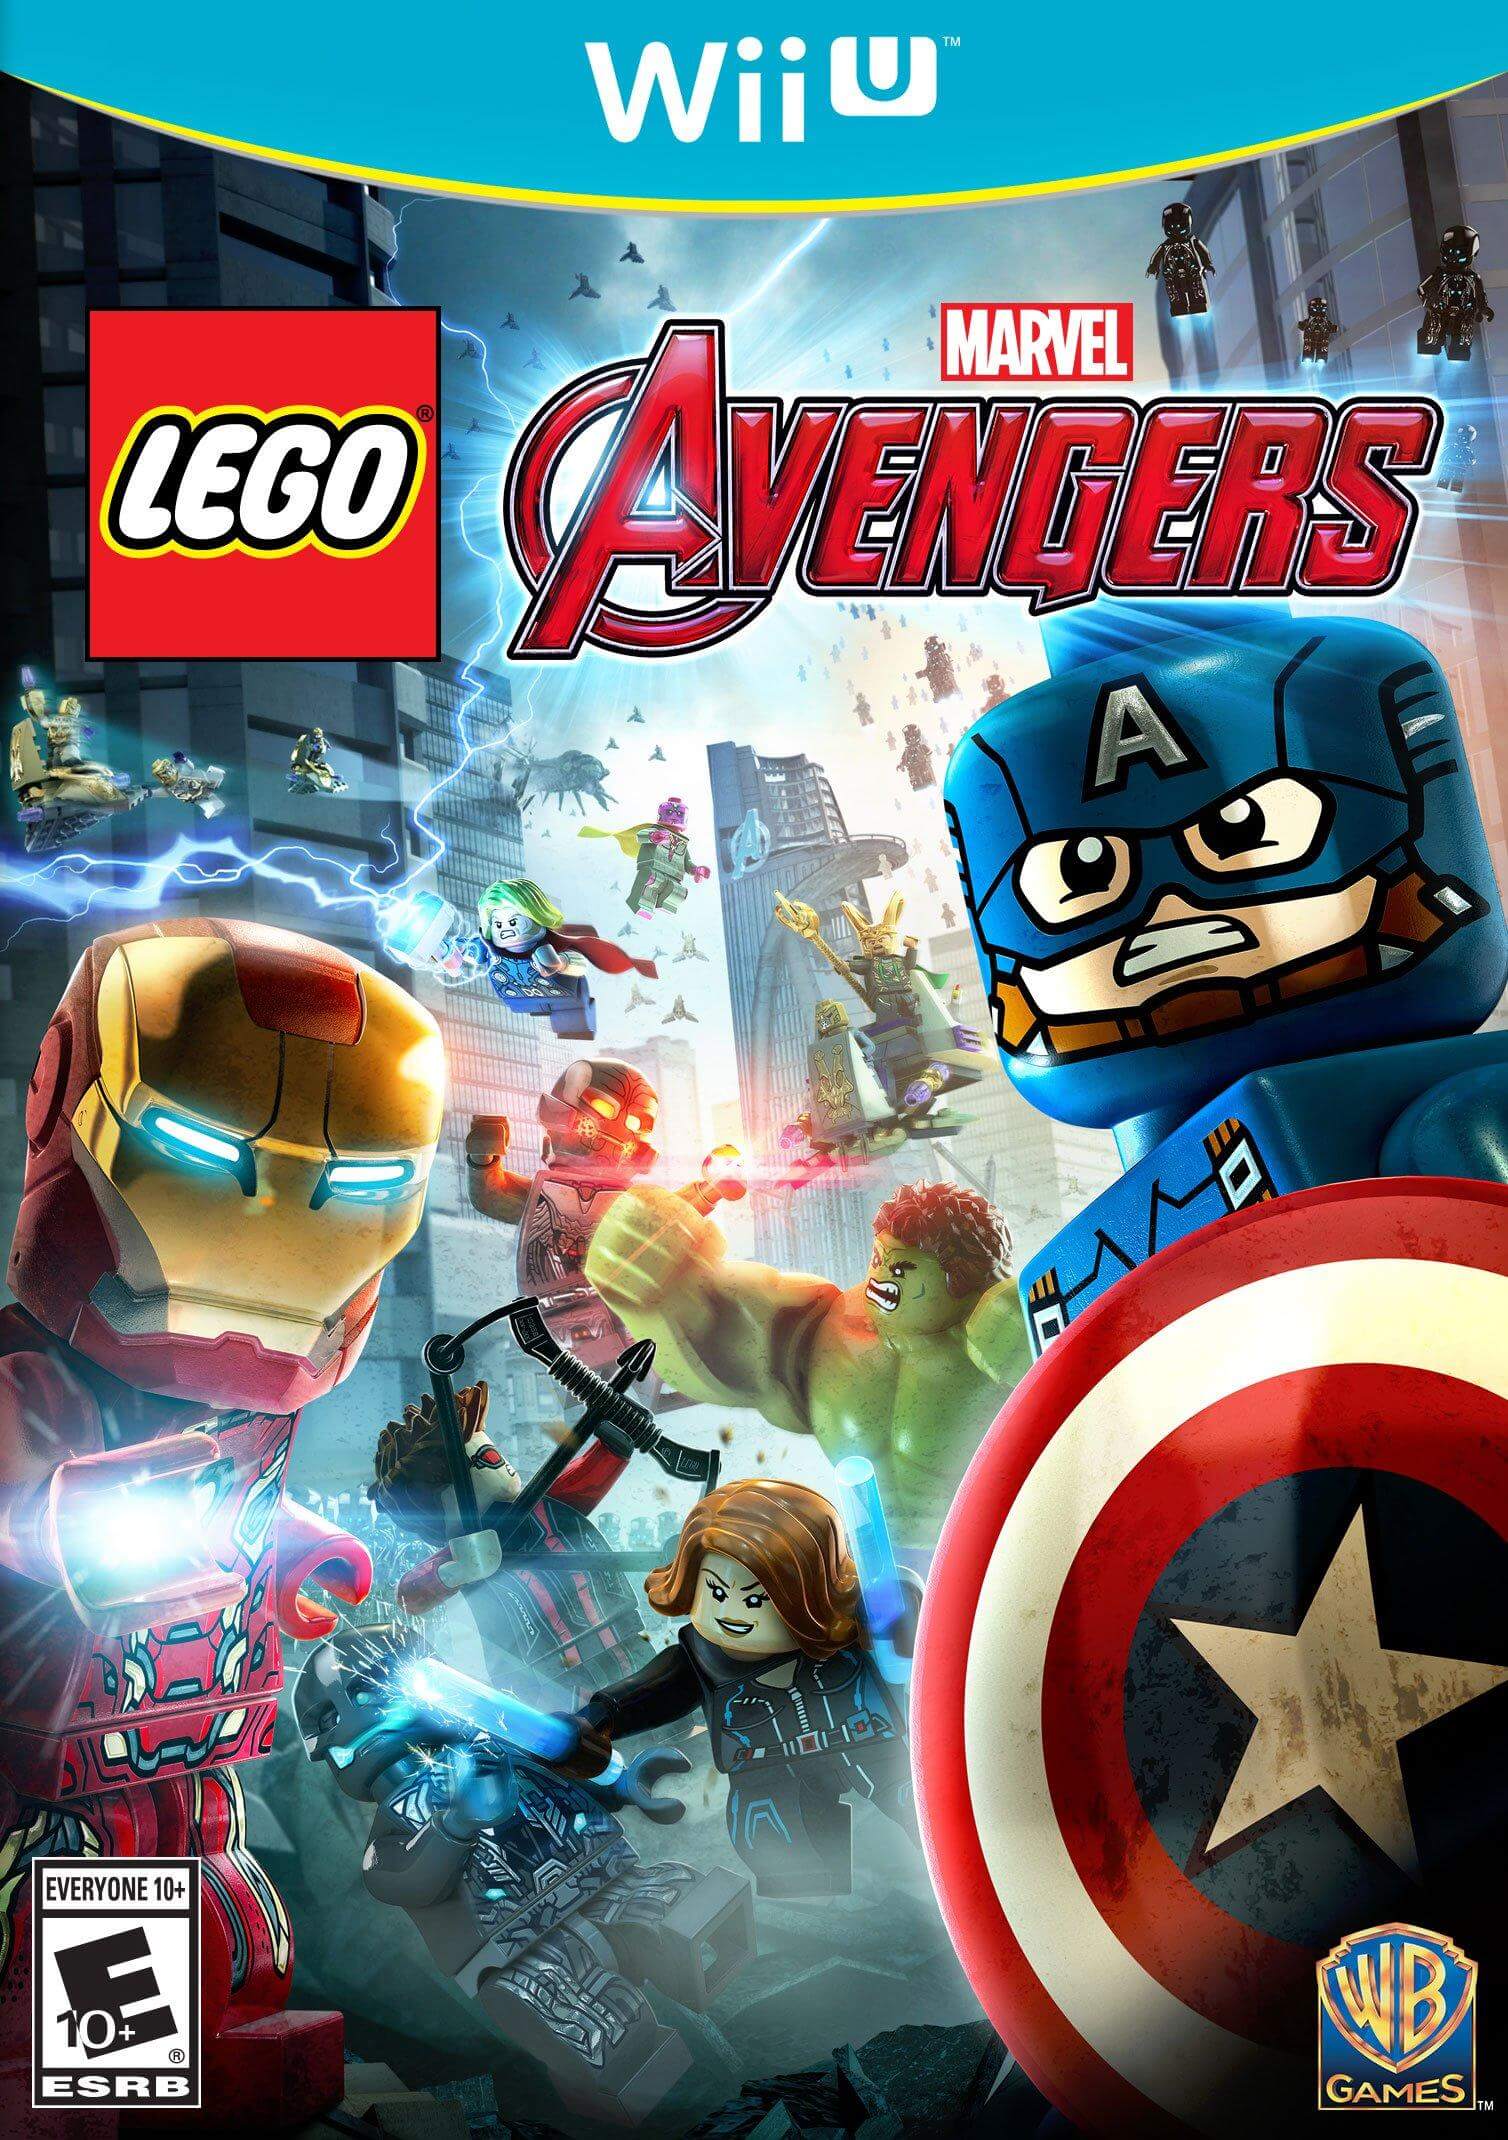 Lego Marvels Avengers Isorom Wiiu Game Download